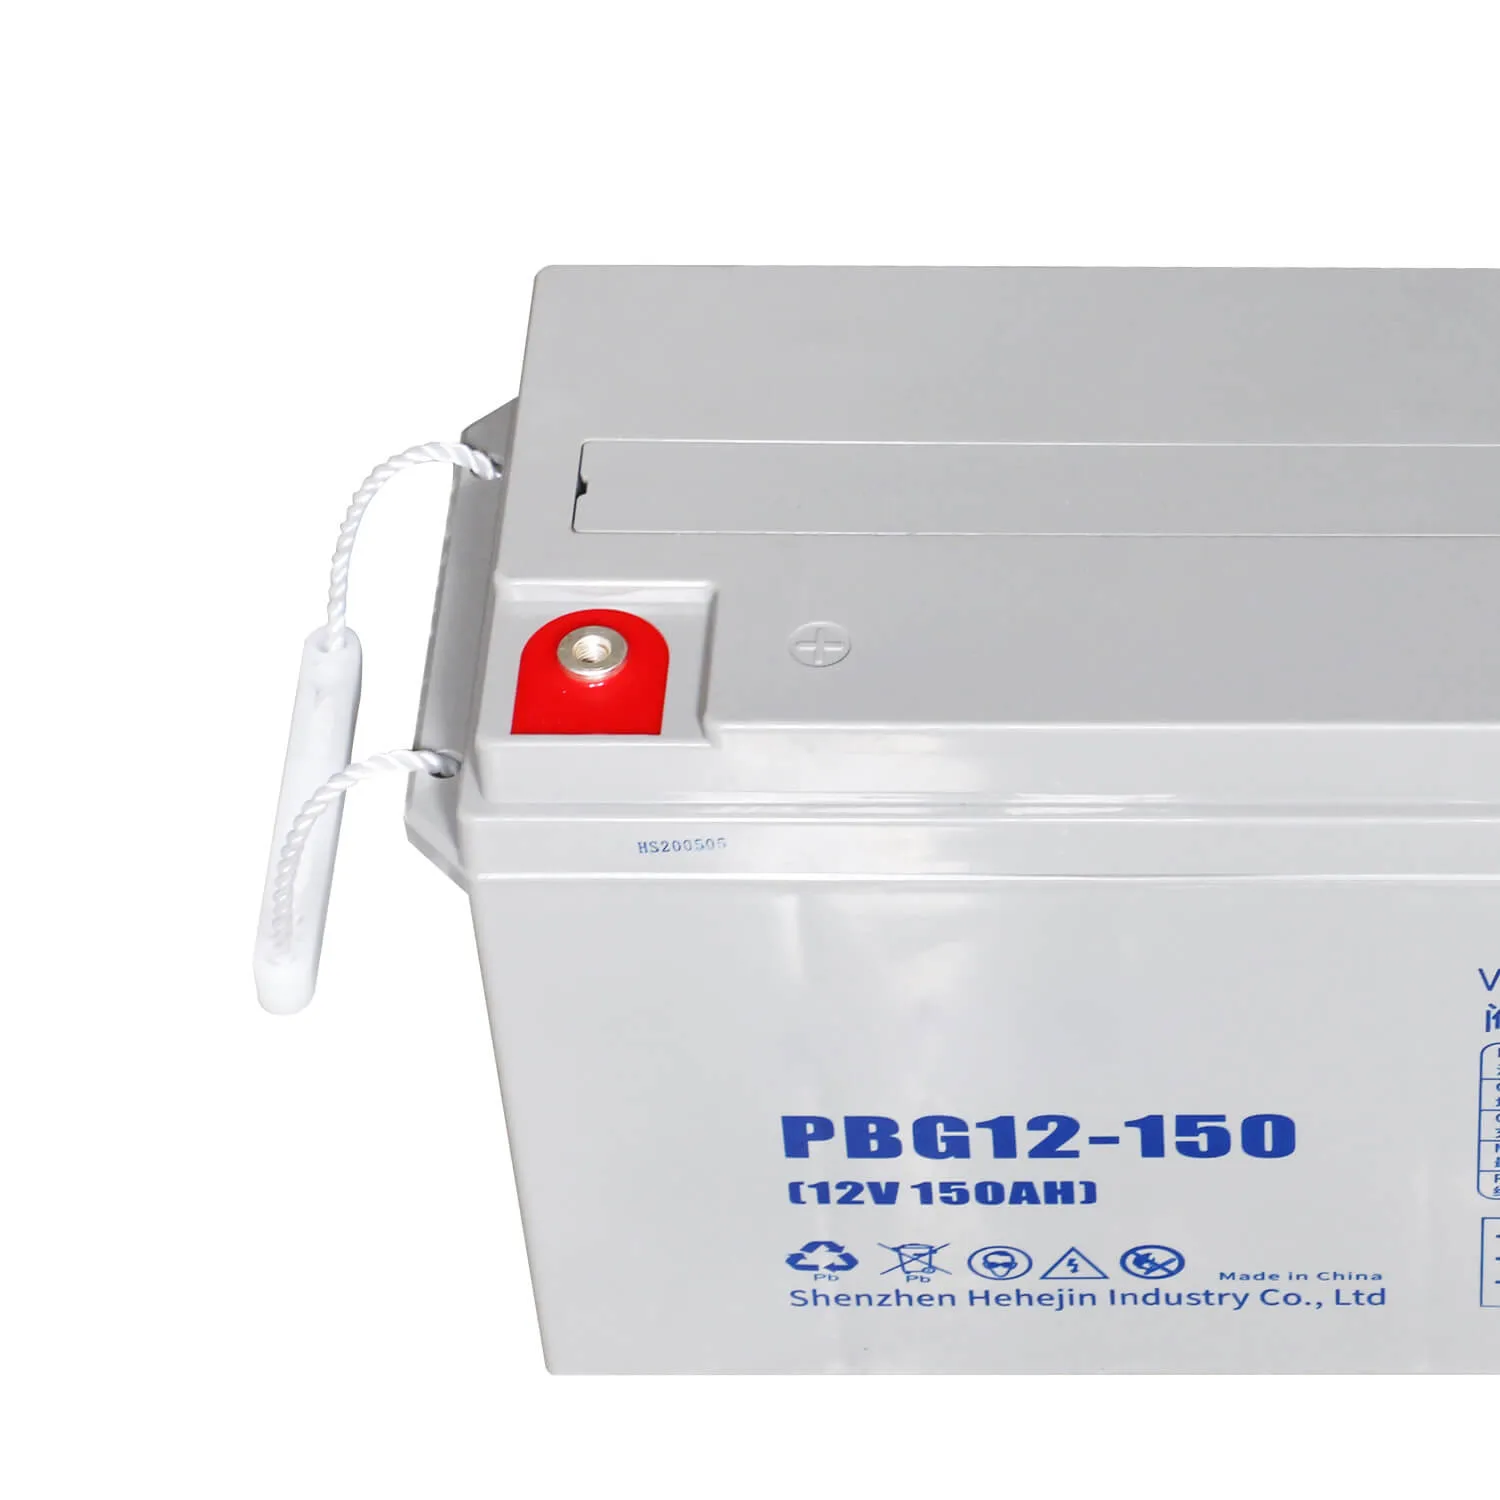 PowMr 150AH 12V Lead-acid GEL batteries